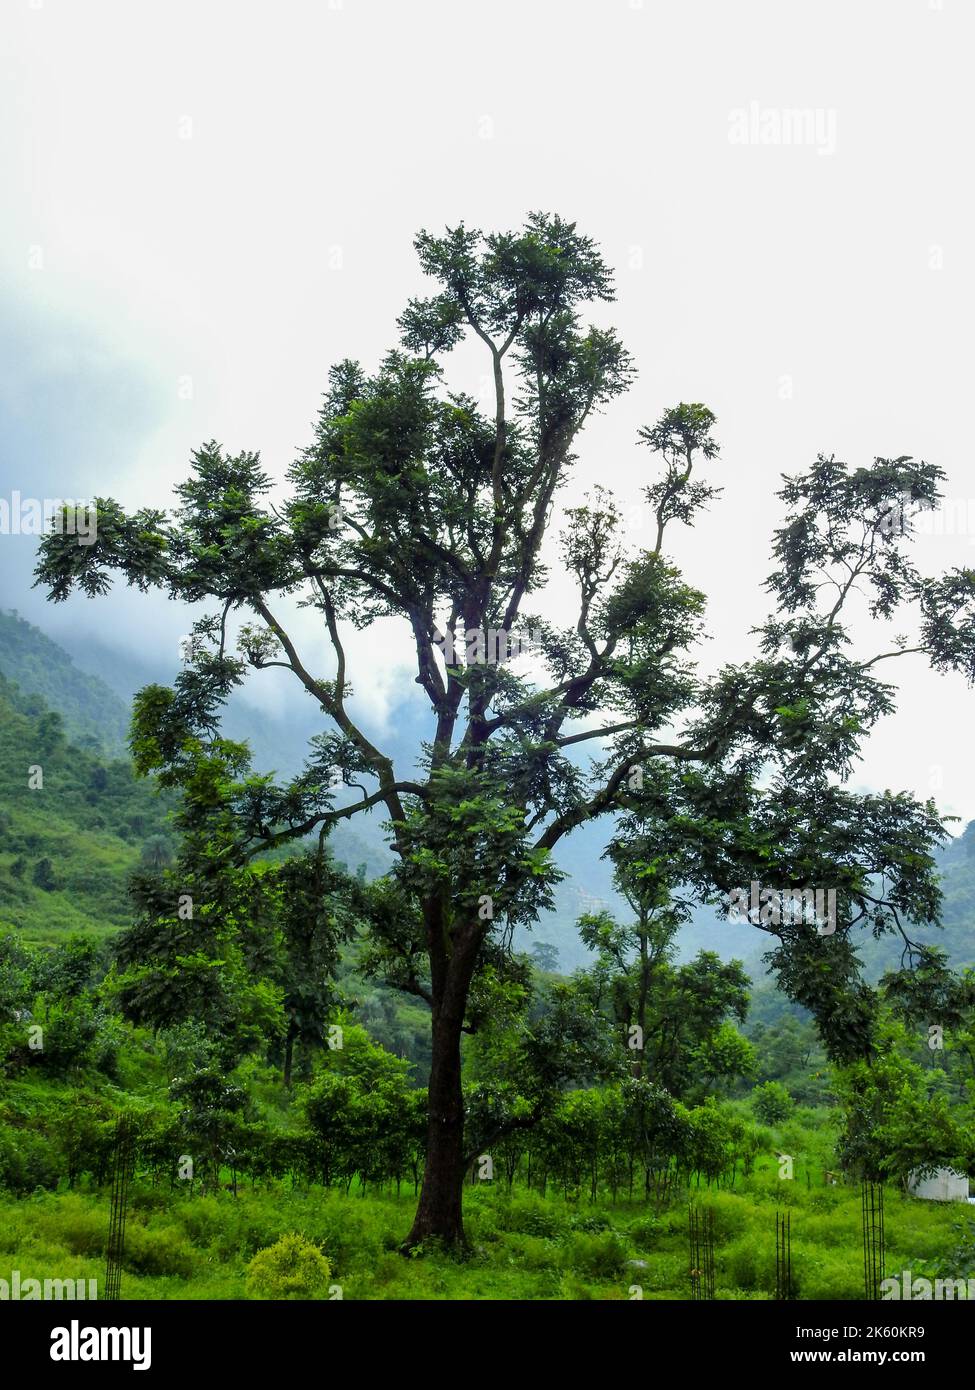 Un arbre isolé dans les montagnes de l'Himalaya pendant la mousson avec la brume tout autour. Uttarakhand Inde. Banque D'Images